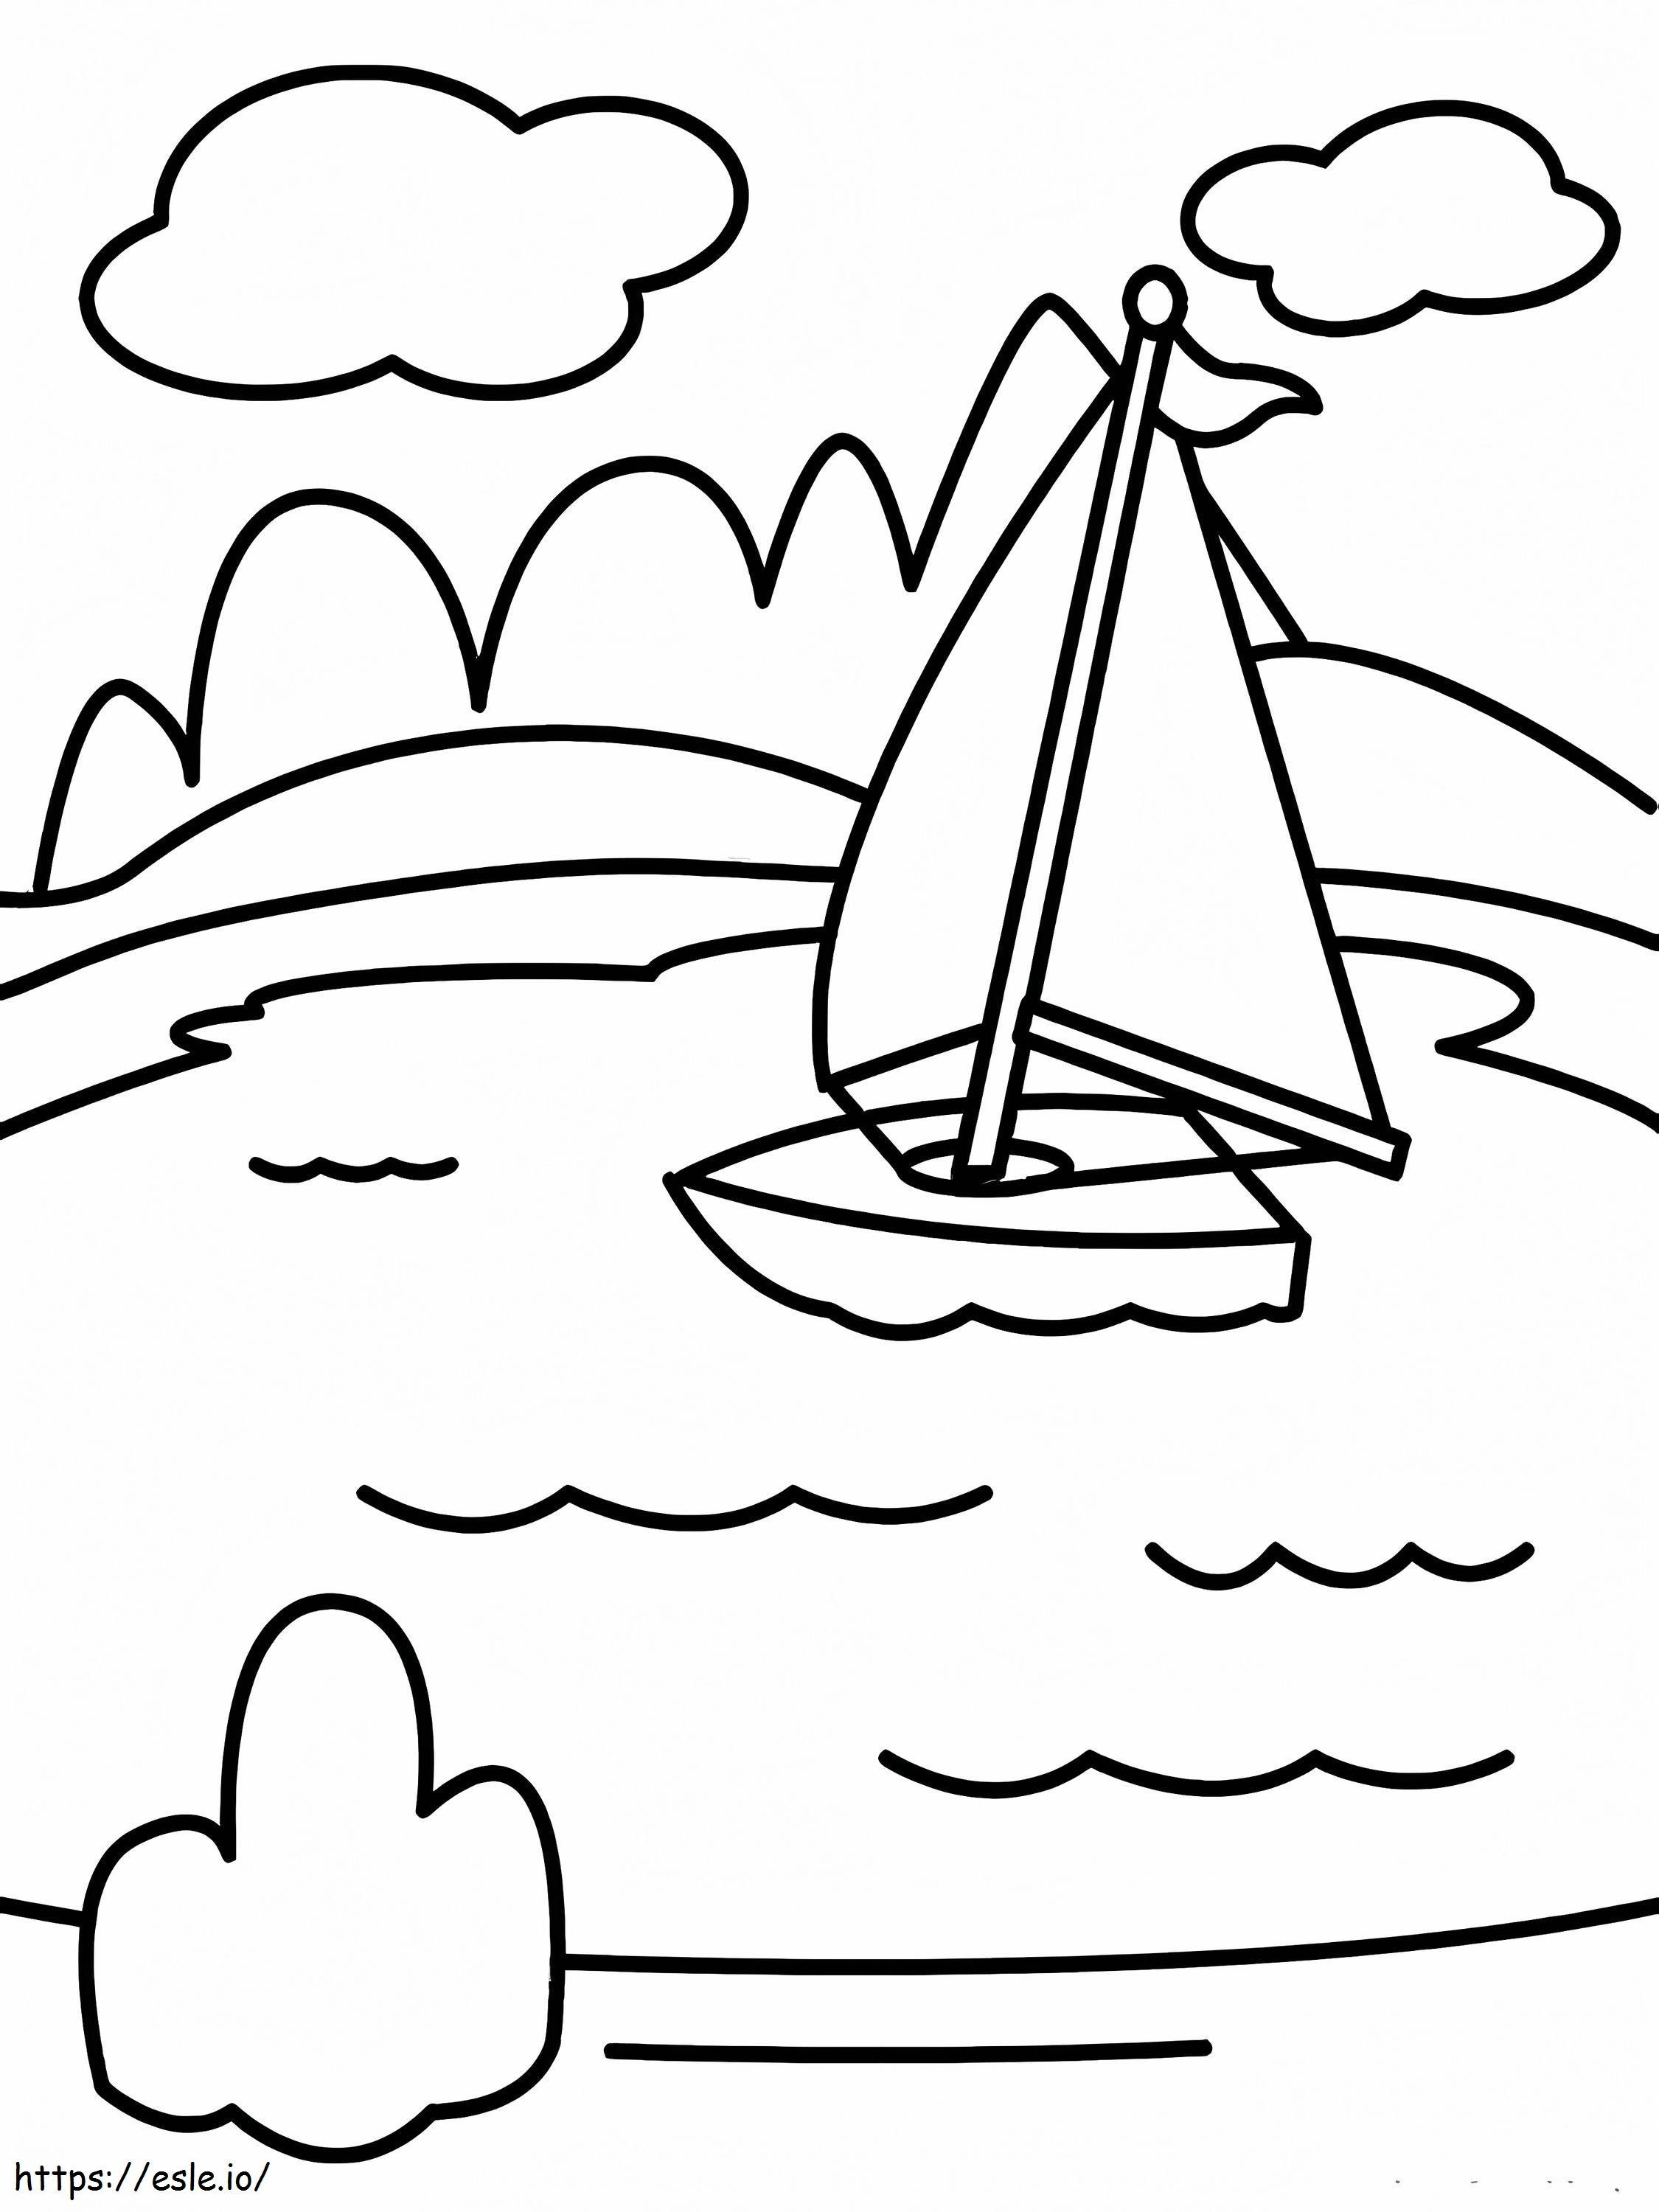 Kleines Segelboot ausmalbilder